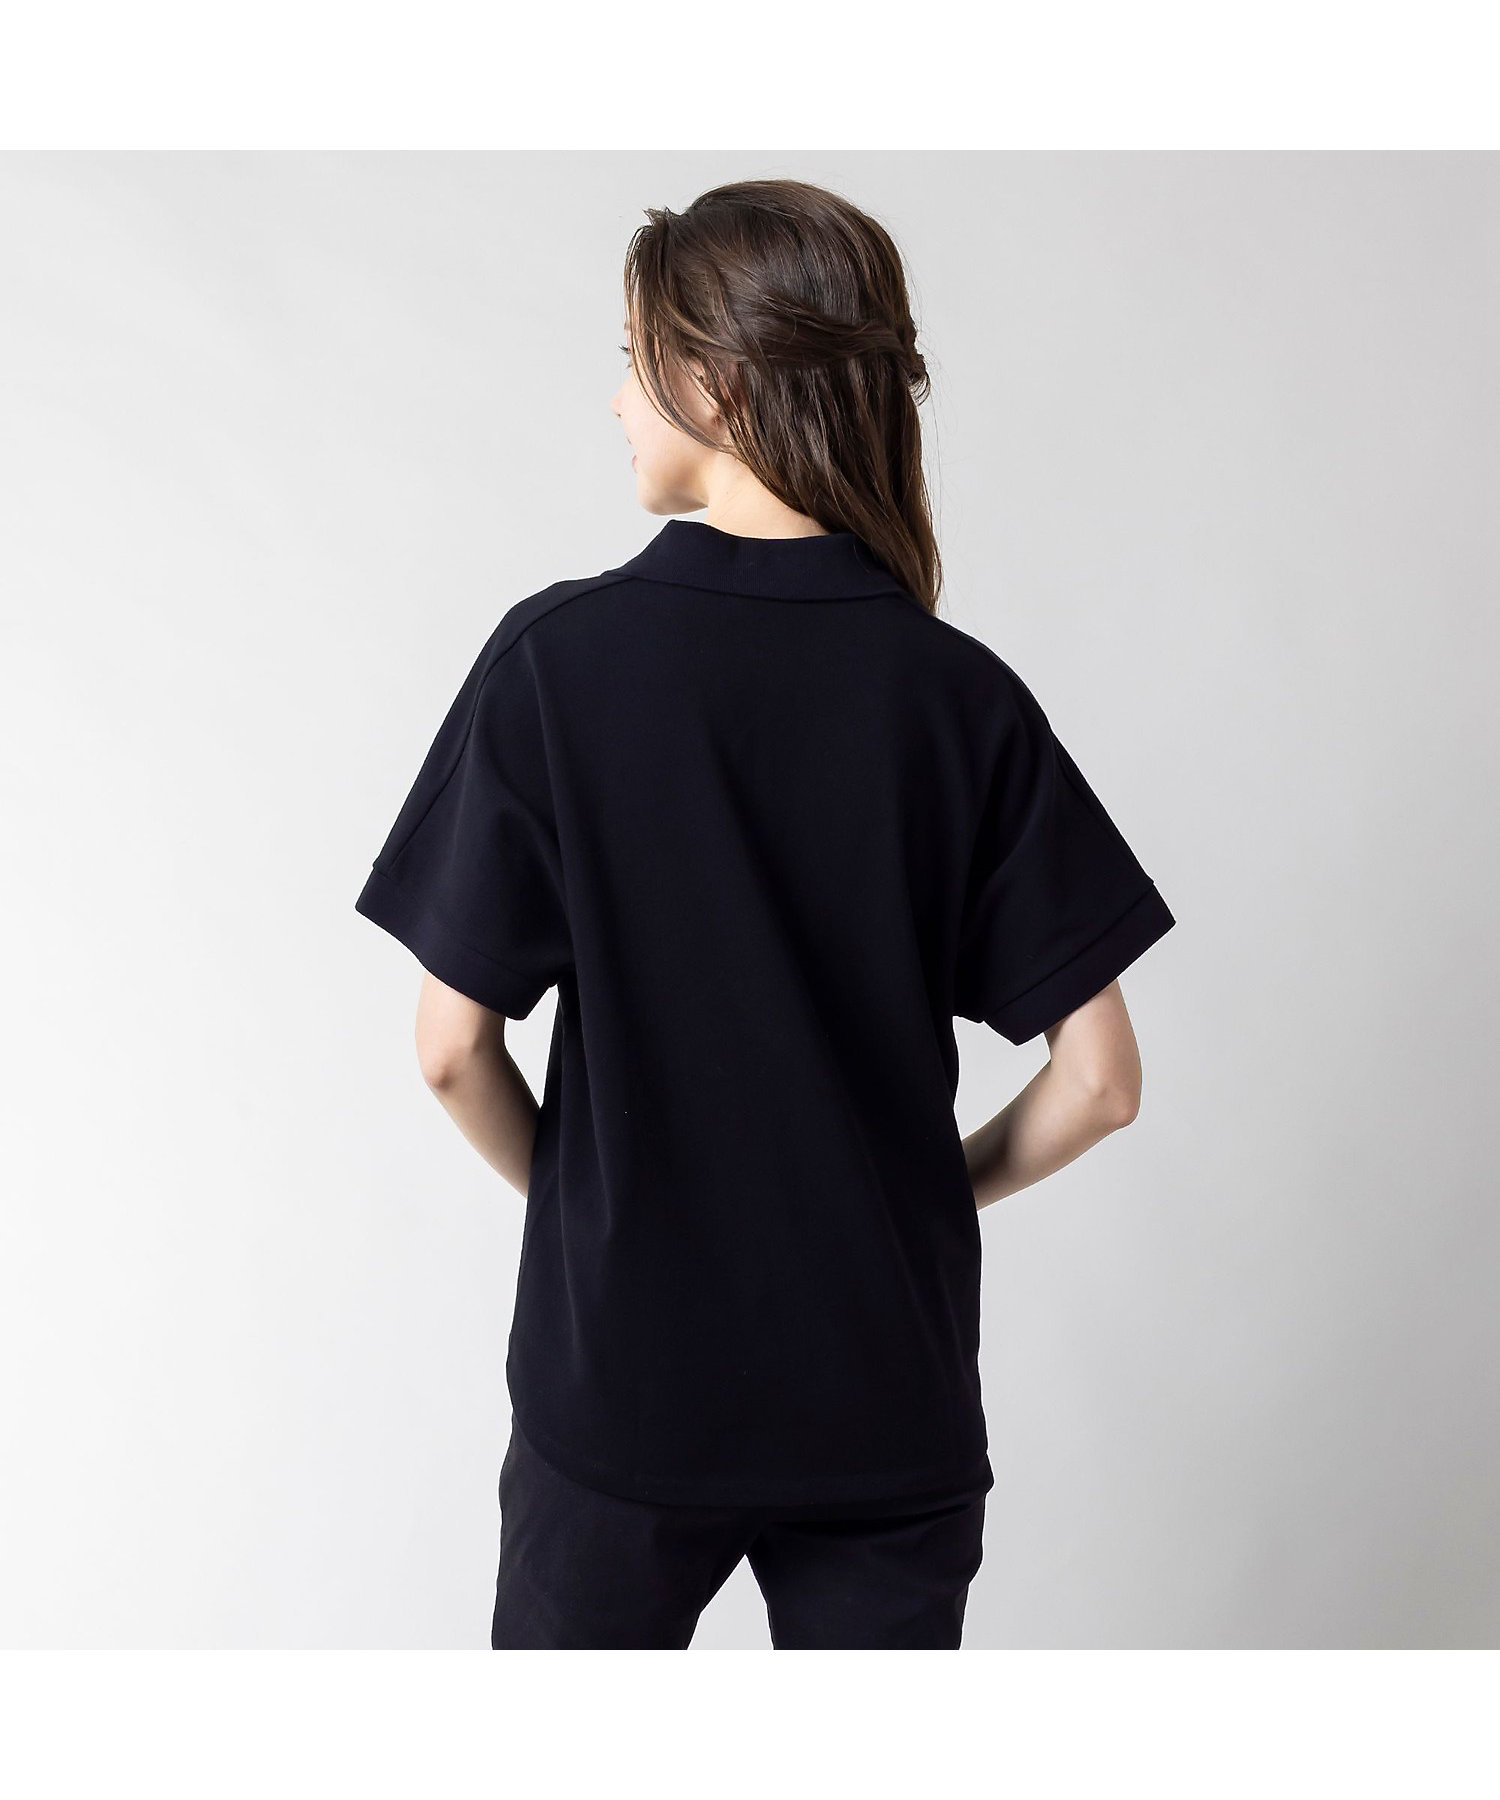 スキッパーネック裾リブポロシャツ の通販 | 三越伊勢丹オンライン